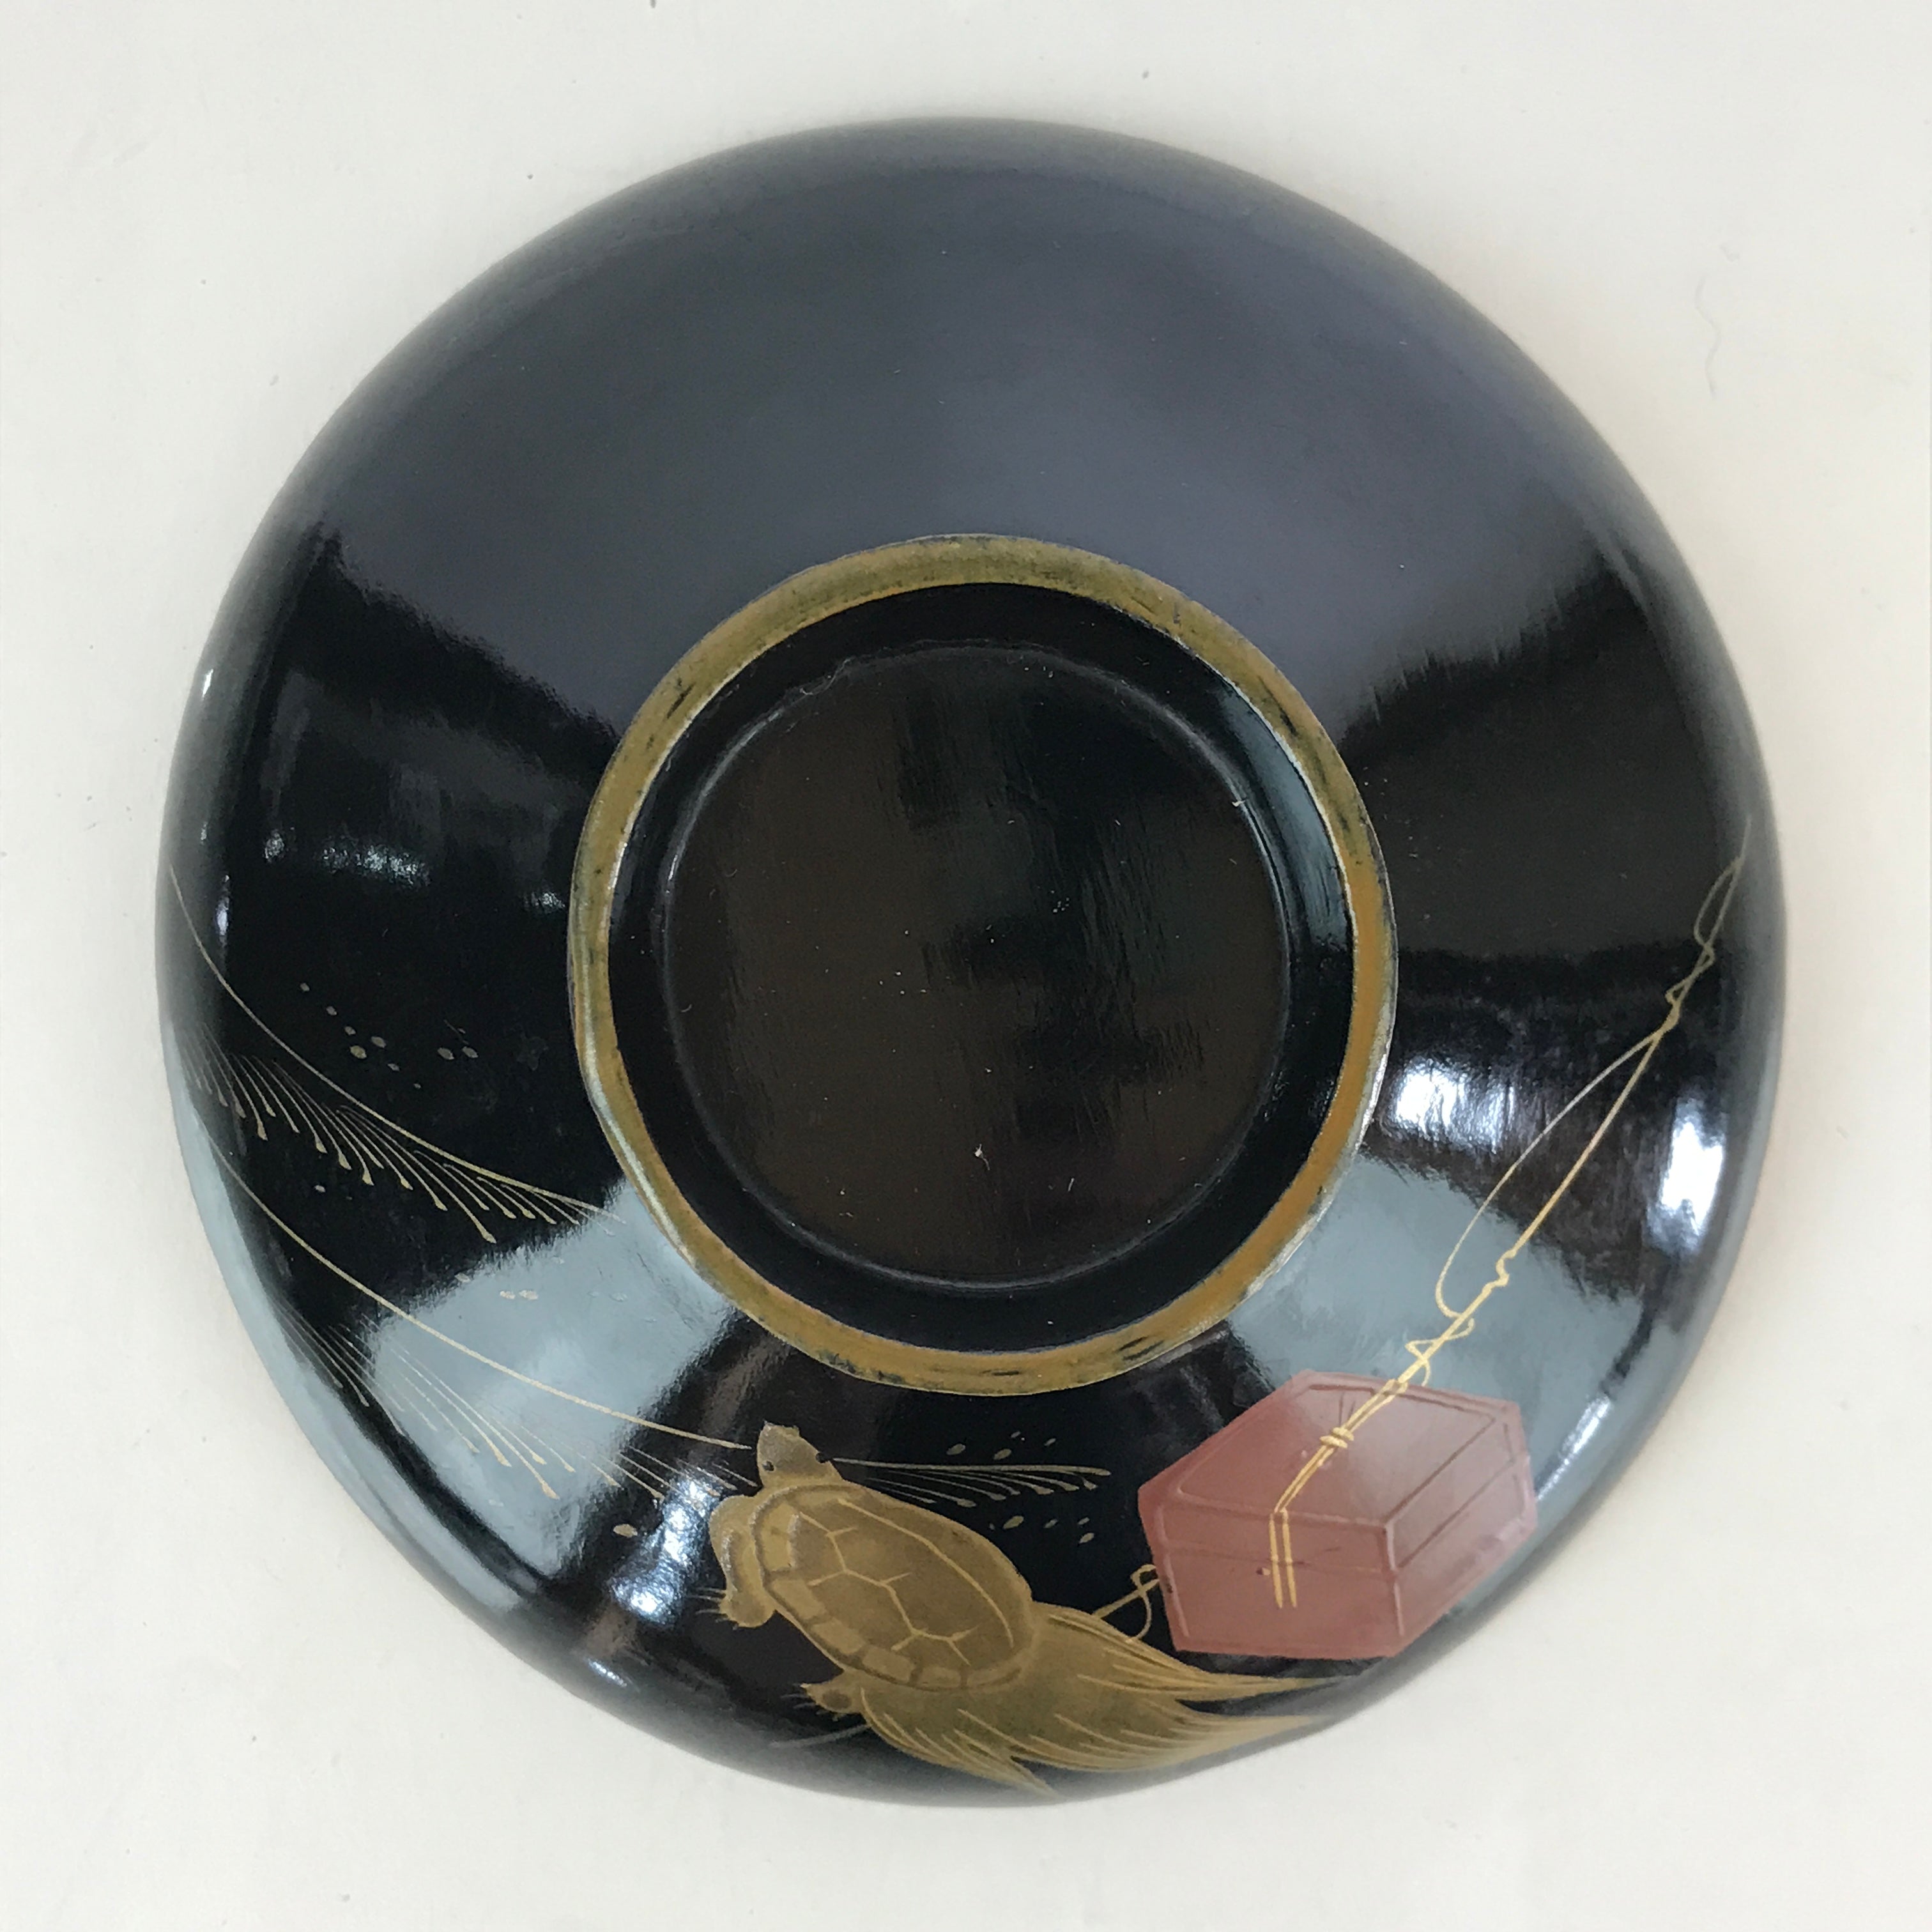 Japanese Lacquerware Lidded Bowl Vtg Urushi Makie Red Black Owan Soup LB1